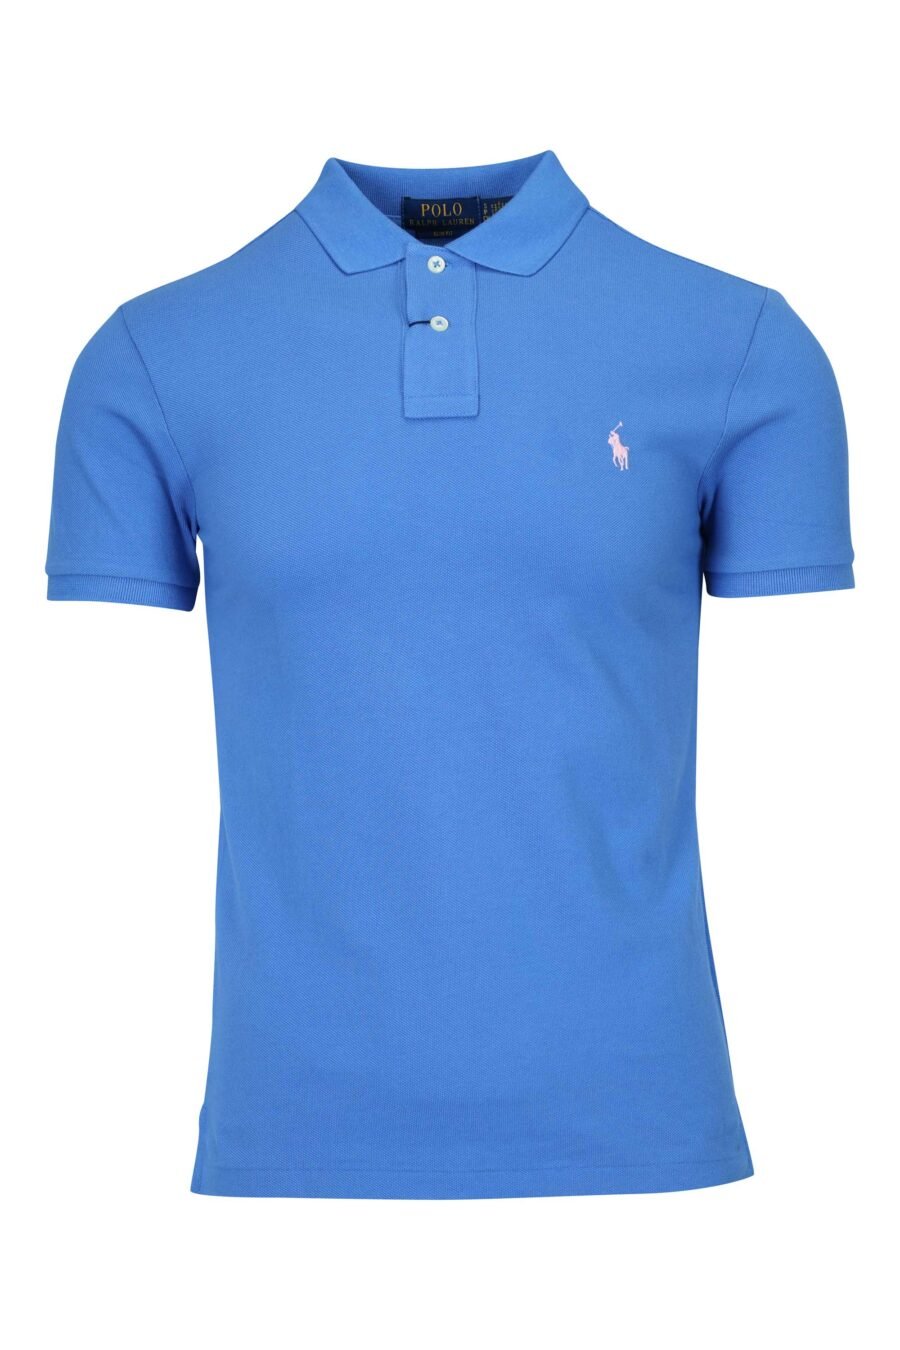 Camiseta azul y rosa con minilogo "polo" - 3616536089159